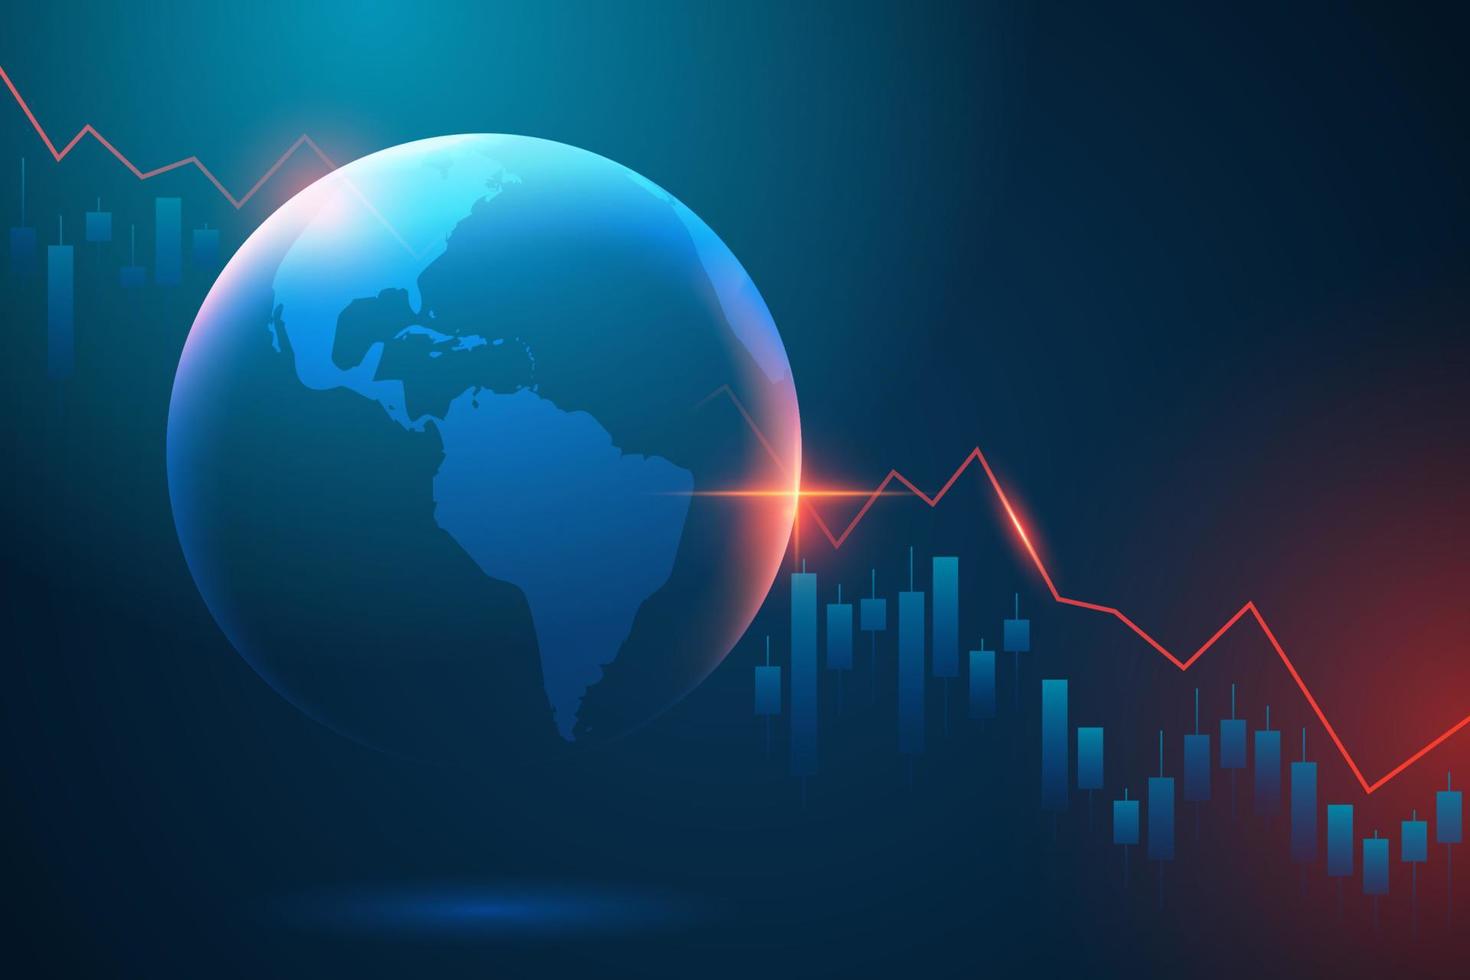 holograma de planeta tierra con negativo gráfico de inversión financiero datos. el concepto de económico recesión y crisis. otoño de mundo comercio vector